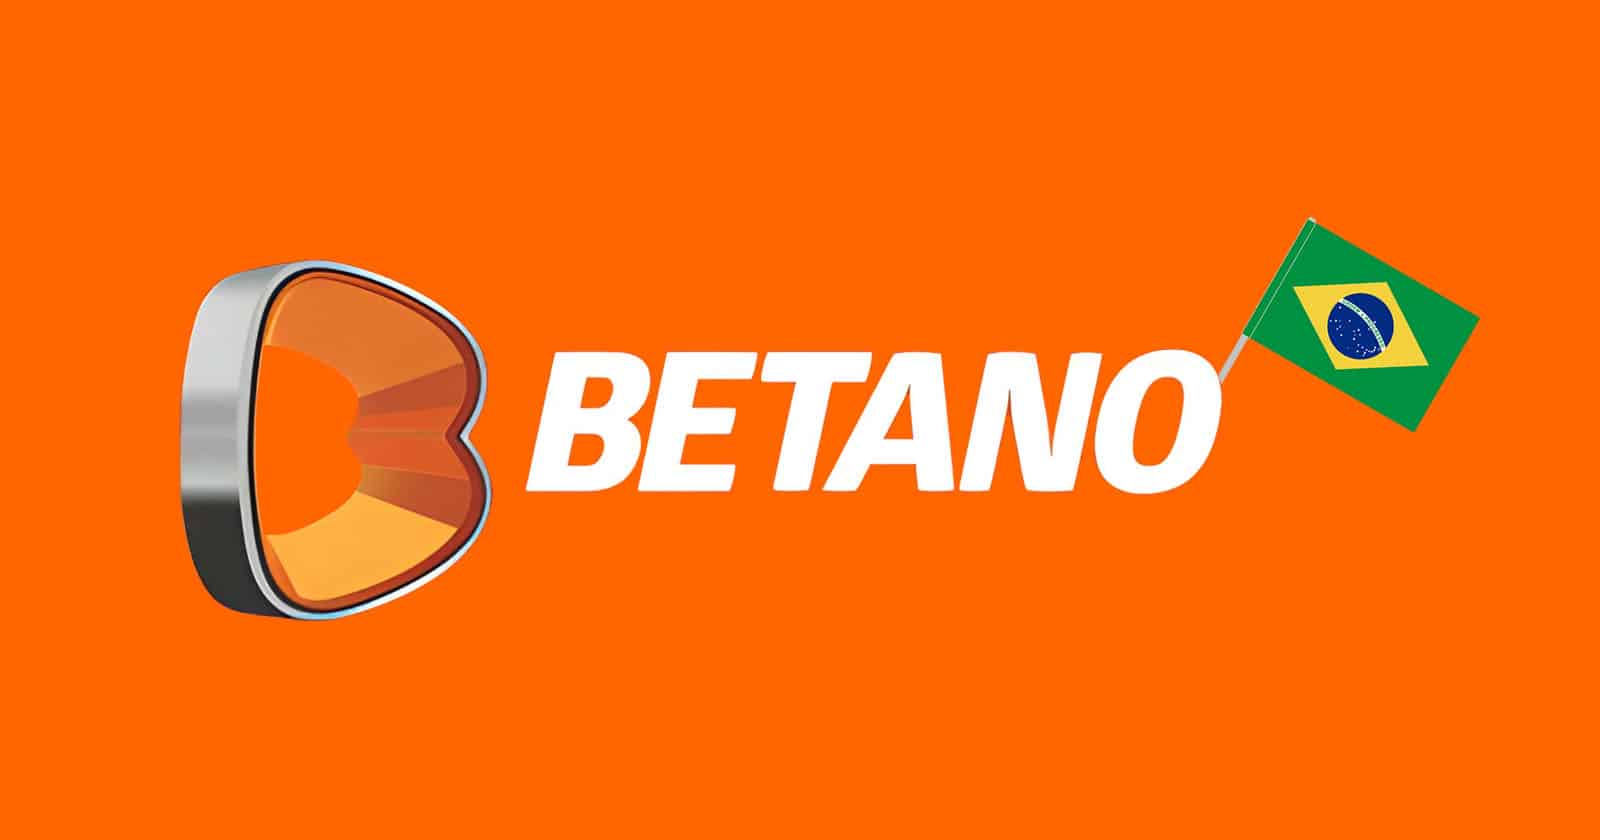 Betano Brasil: avaliação completa sobre bonus, app, odds